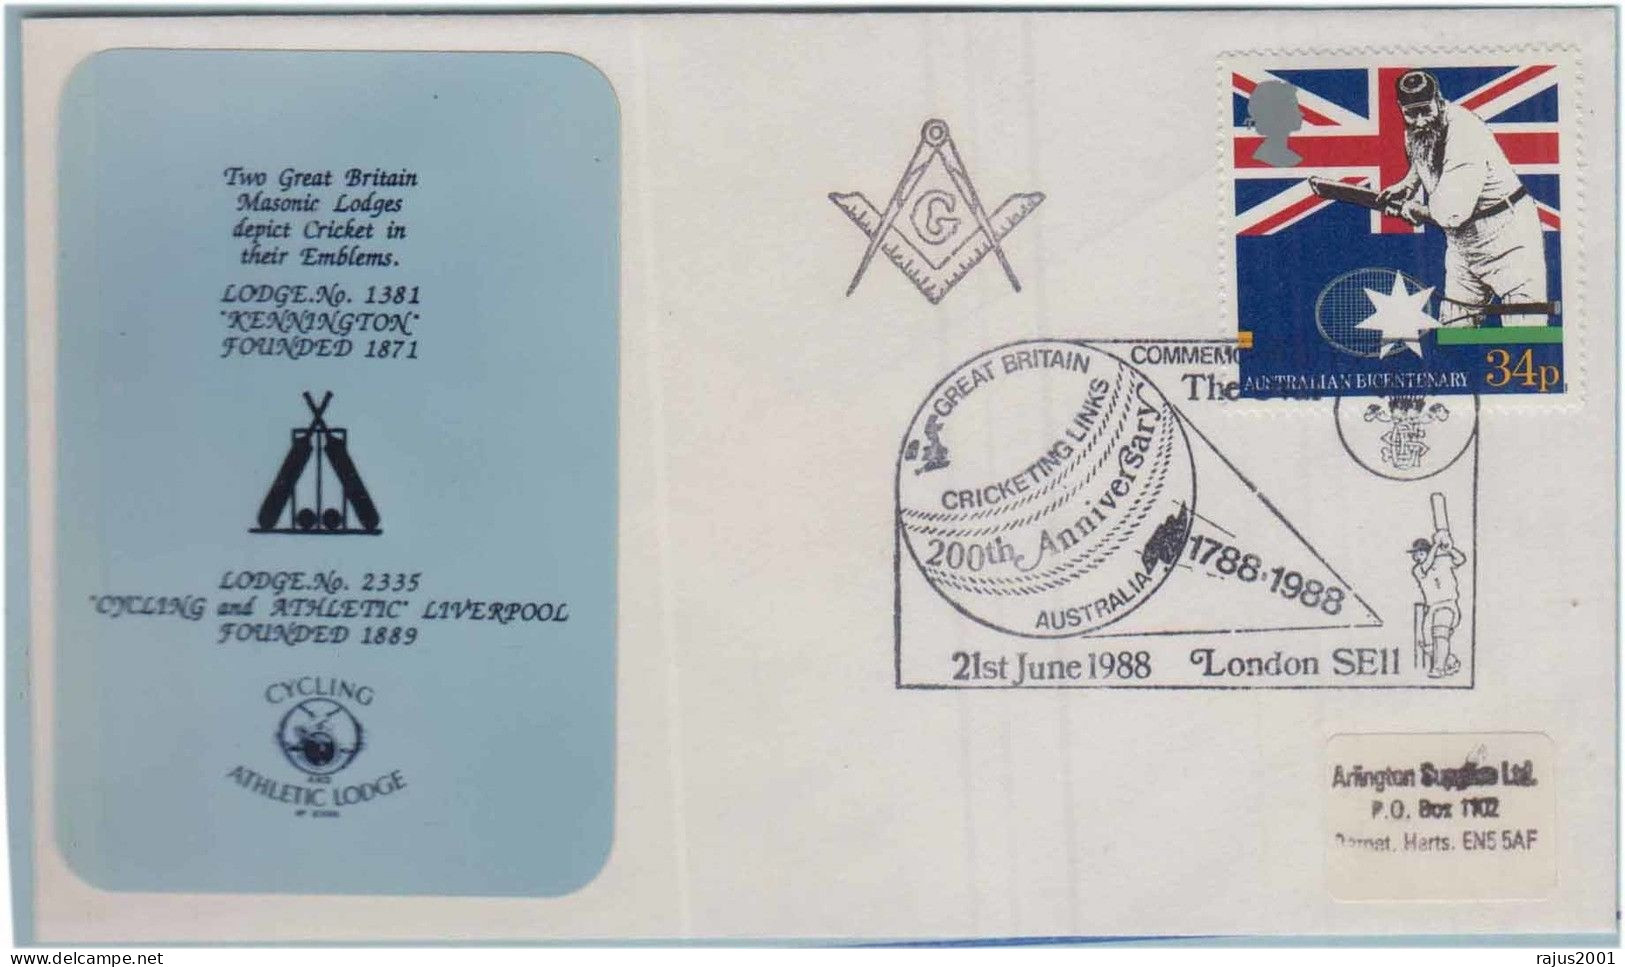 Kennington Lodge No 1381, Cycling And Athletic Lodge No 2335, Cricket Match Ball Bat Freemasonry Masonic Britain Cover - Francmasonería